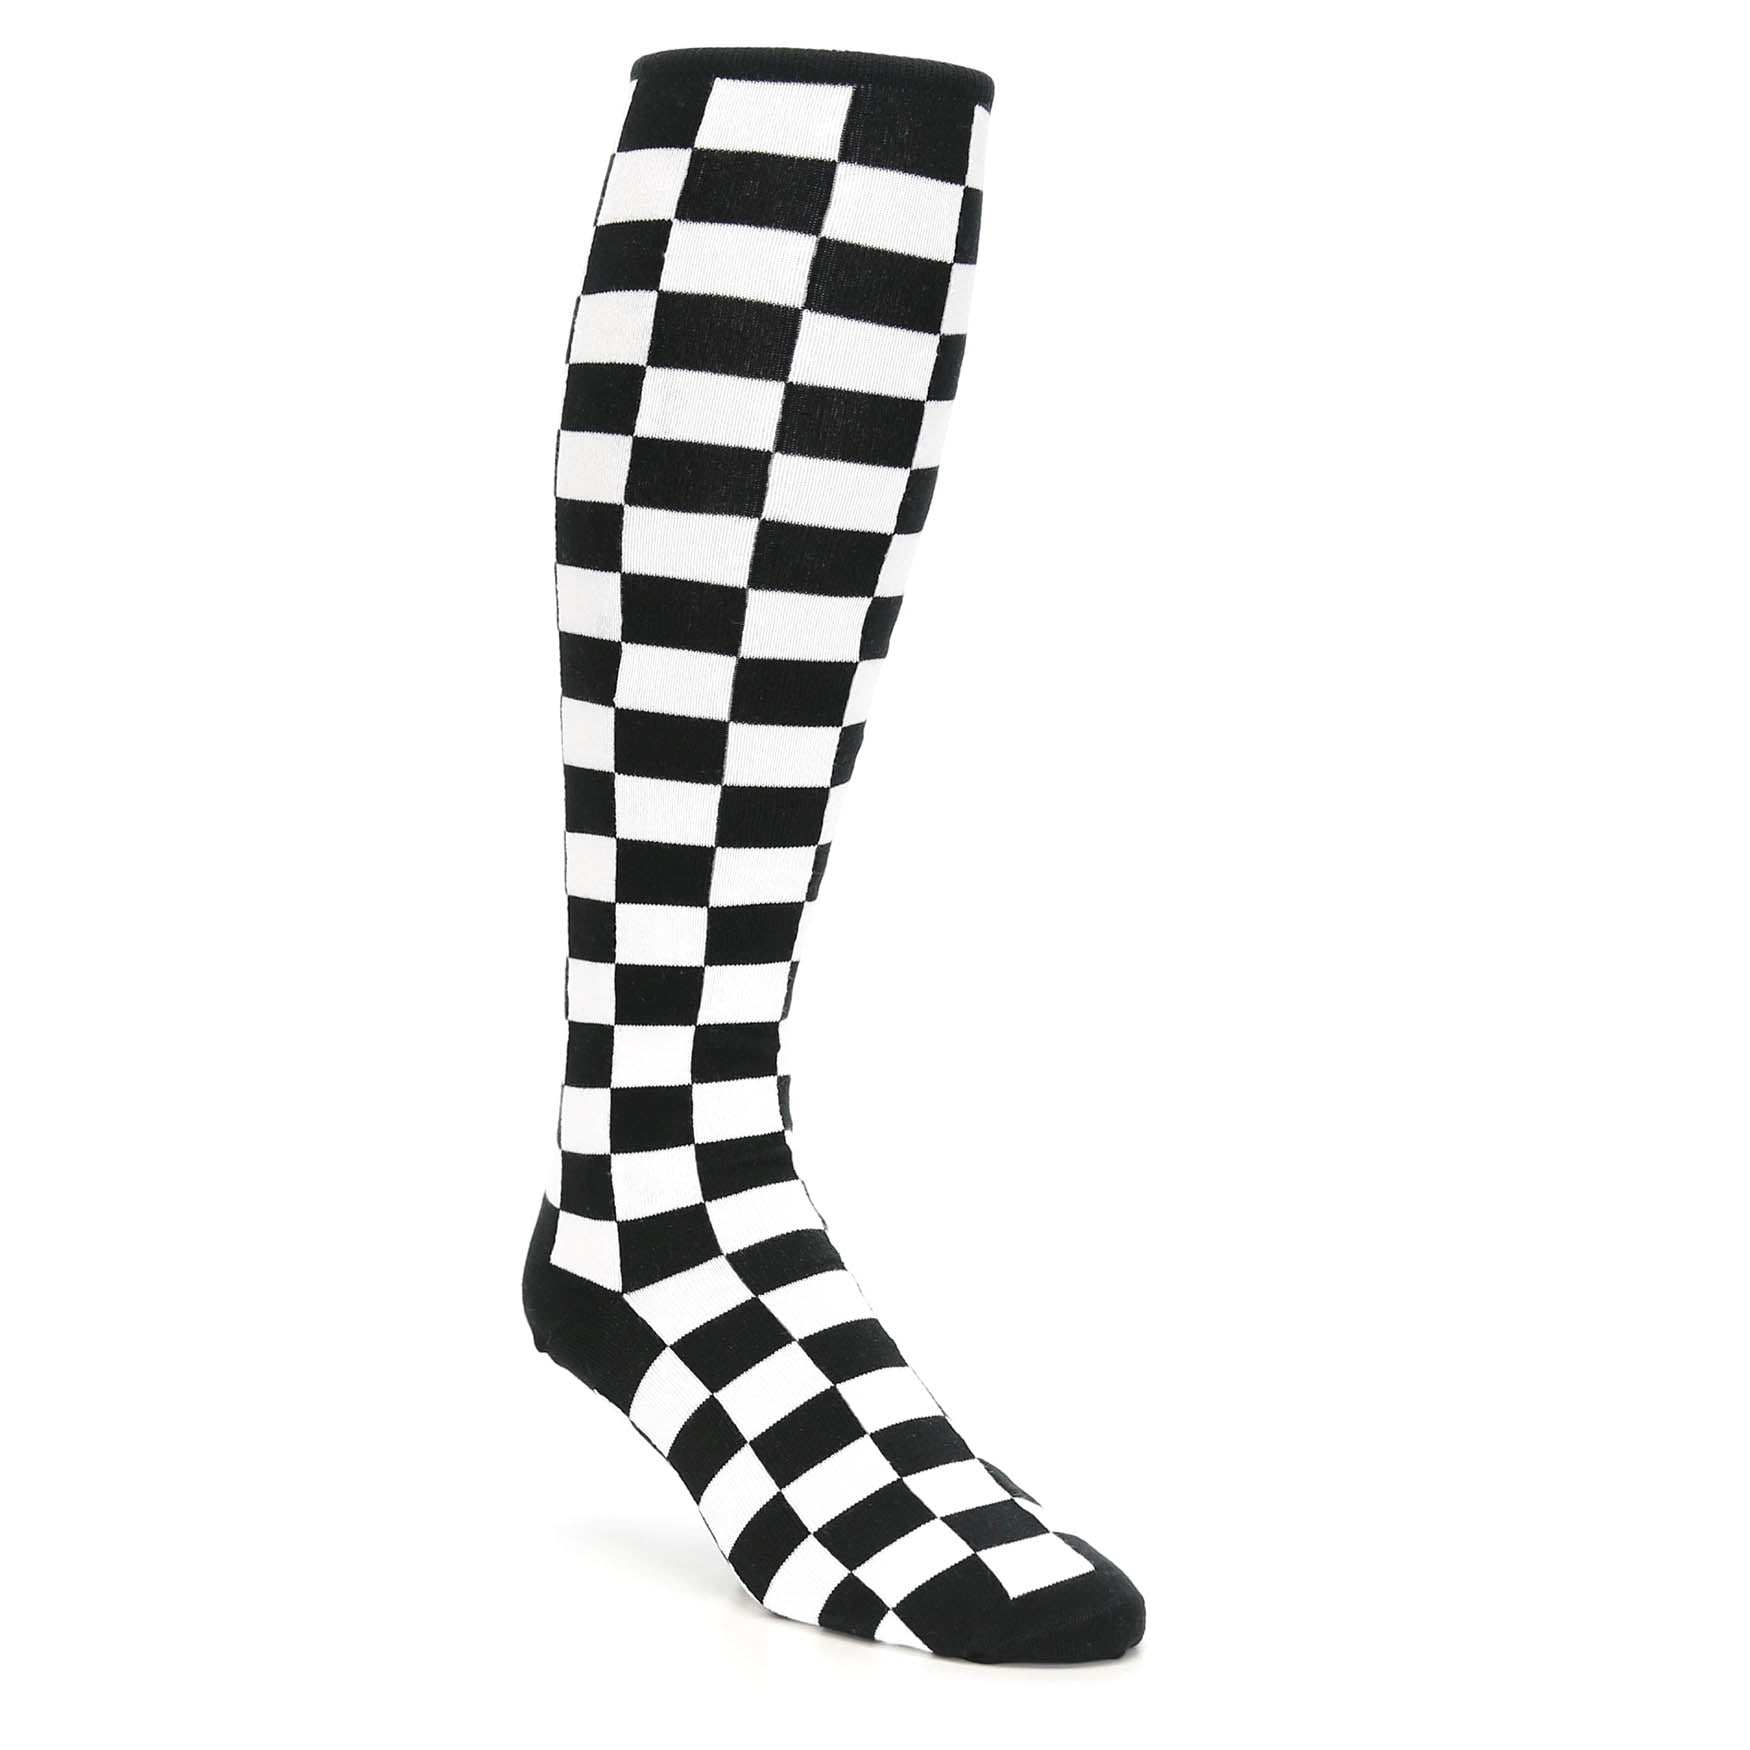 Black White Checkered Men's Over-the-Calf Dress Socks